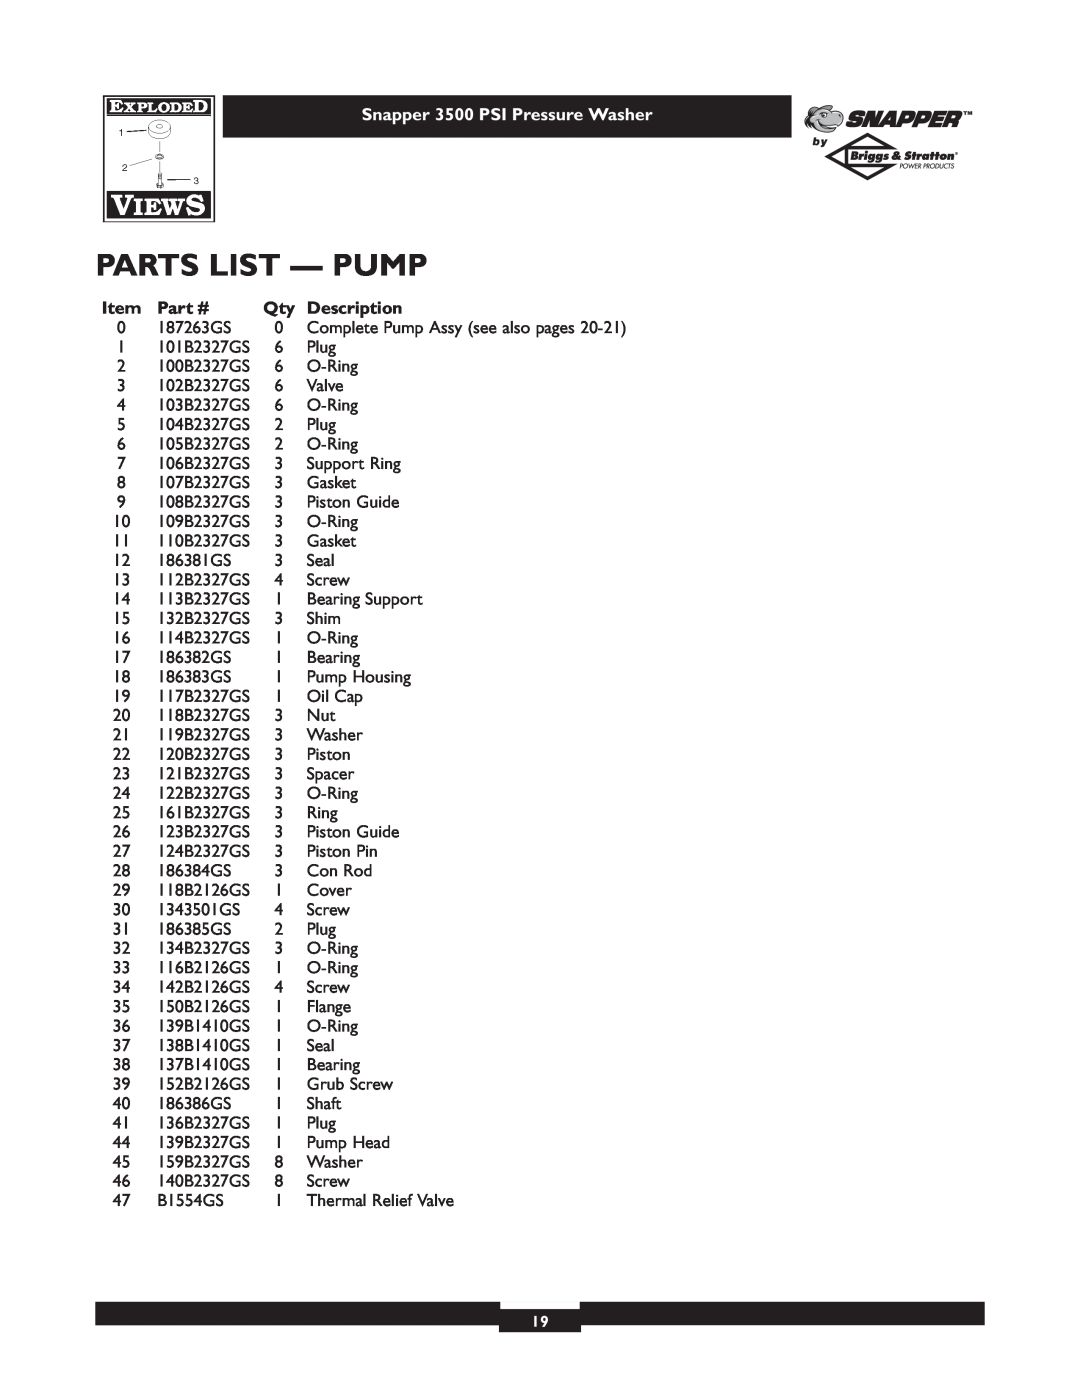 Briggs & Stratton 3500PSI manual Parts List - Pump, Snapper 3500 PSI Pressure Washer, Description 